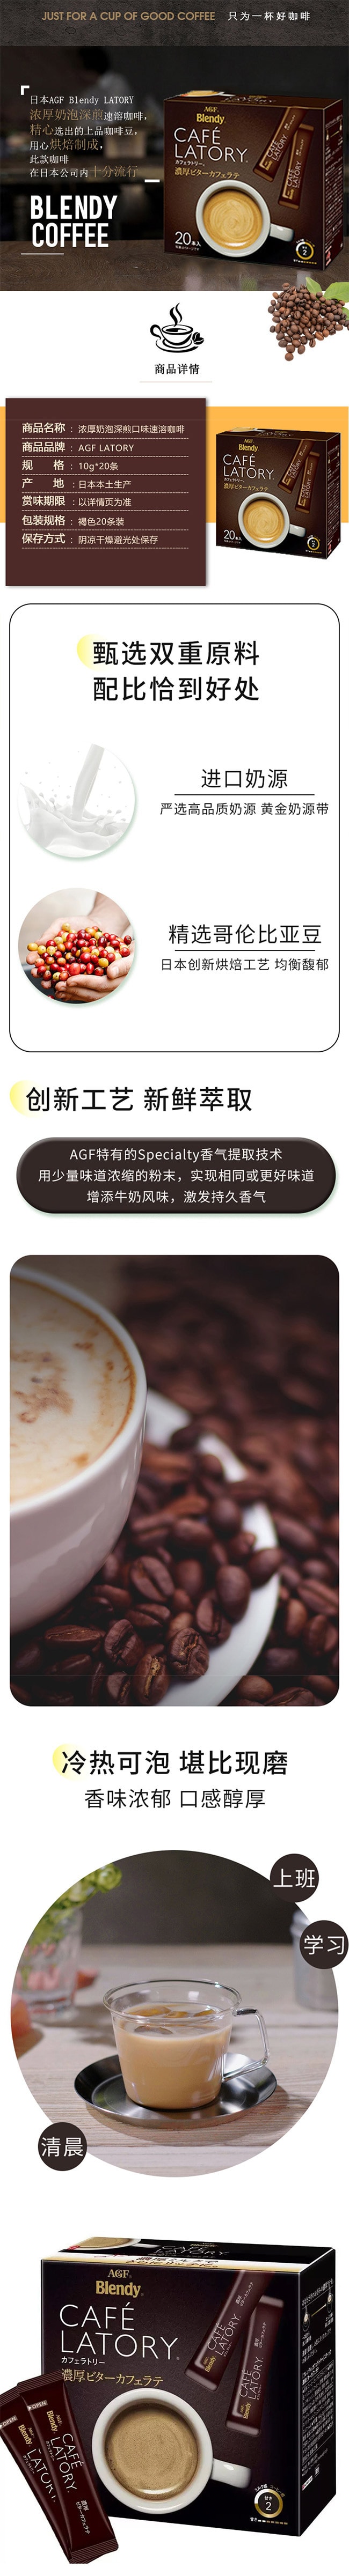 【日本直邮】AGF CAFE LATORY 醇厚微苦拿铁咖啡 20条入